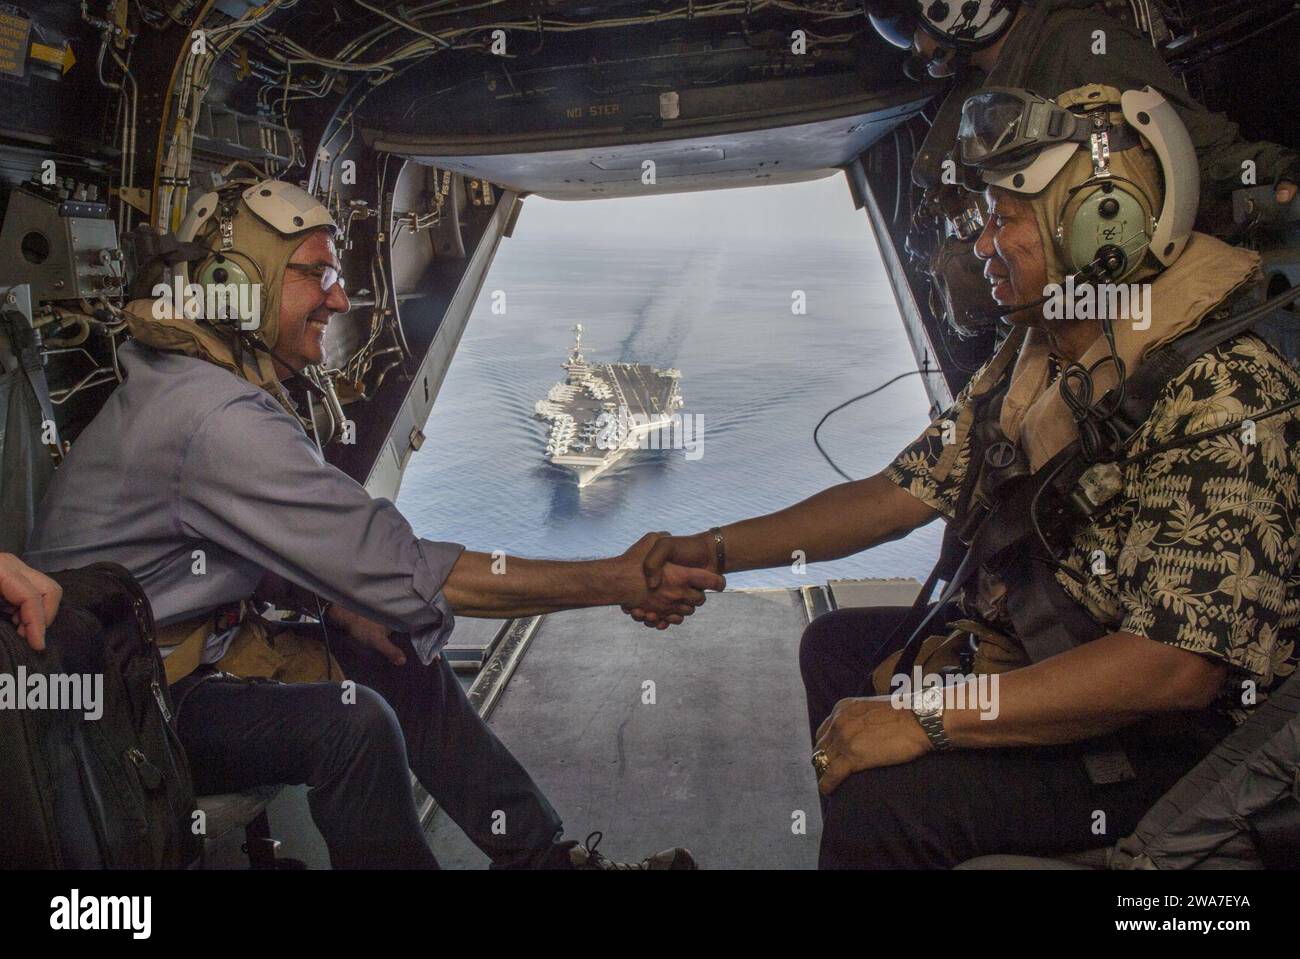 Forces militaires AMÉRICAINES. MER DE CHINE MÉRIDIONALE (15 avril 2016) le secrétaire à la Défense (SECDEF) Ash carter (à gauche) et le secrétaire philippin à la Défense nationale Voltaire Gazmin (à droite) serrent la main sur un V-22 Osprey du corps des Marines alors qu'ils quittent le porte-avions USS John C. Stennis (CVN 74) après avoir visité le porte-avions alors qu'il navigue en mer de Chine méridionale le 15 avril 2016. Carter est en visite aux Philippines pour consolider le rééquilibrage vers la région Asie-Pacifique. (Photo de l'US Air Force par le sergent-maître Adrian Cadiz/libéré) Banque D'Images